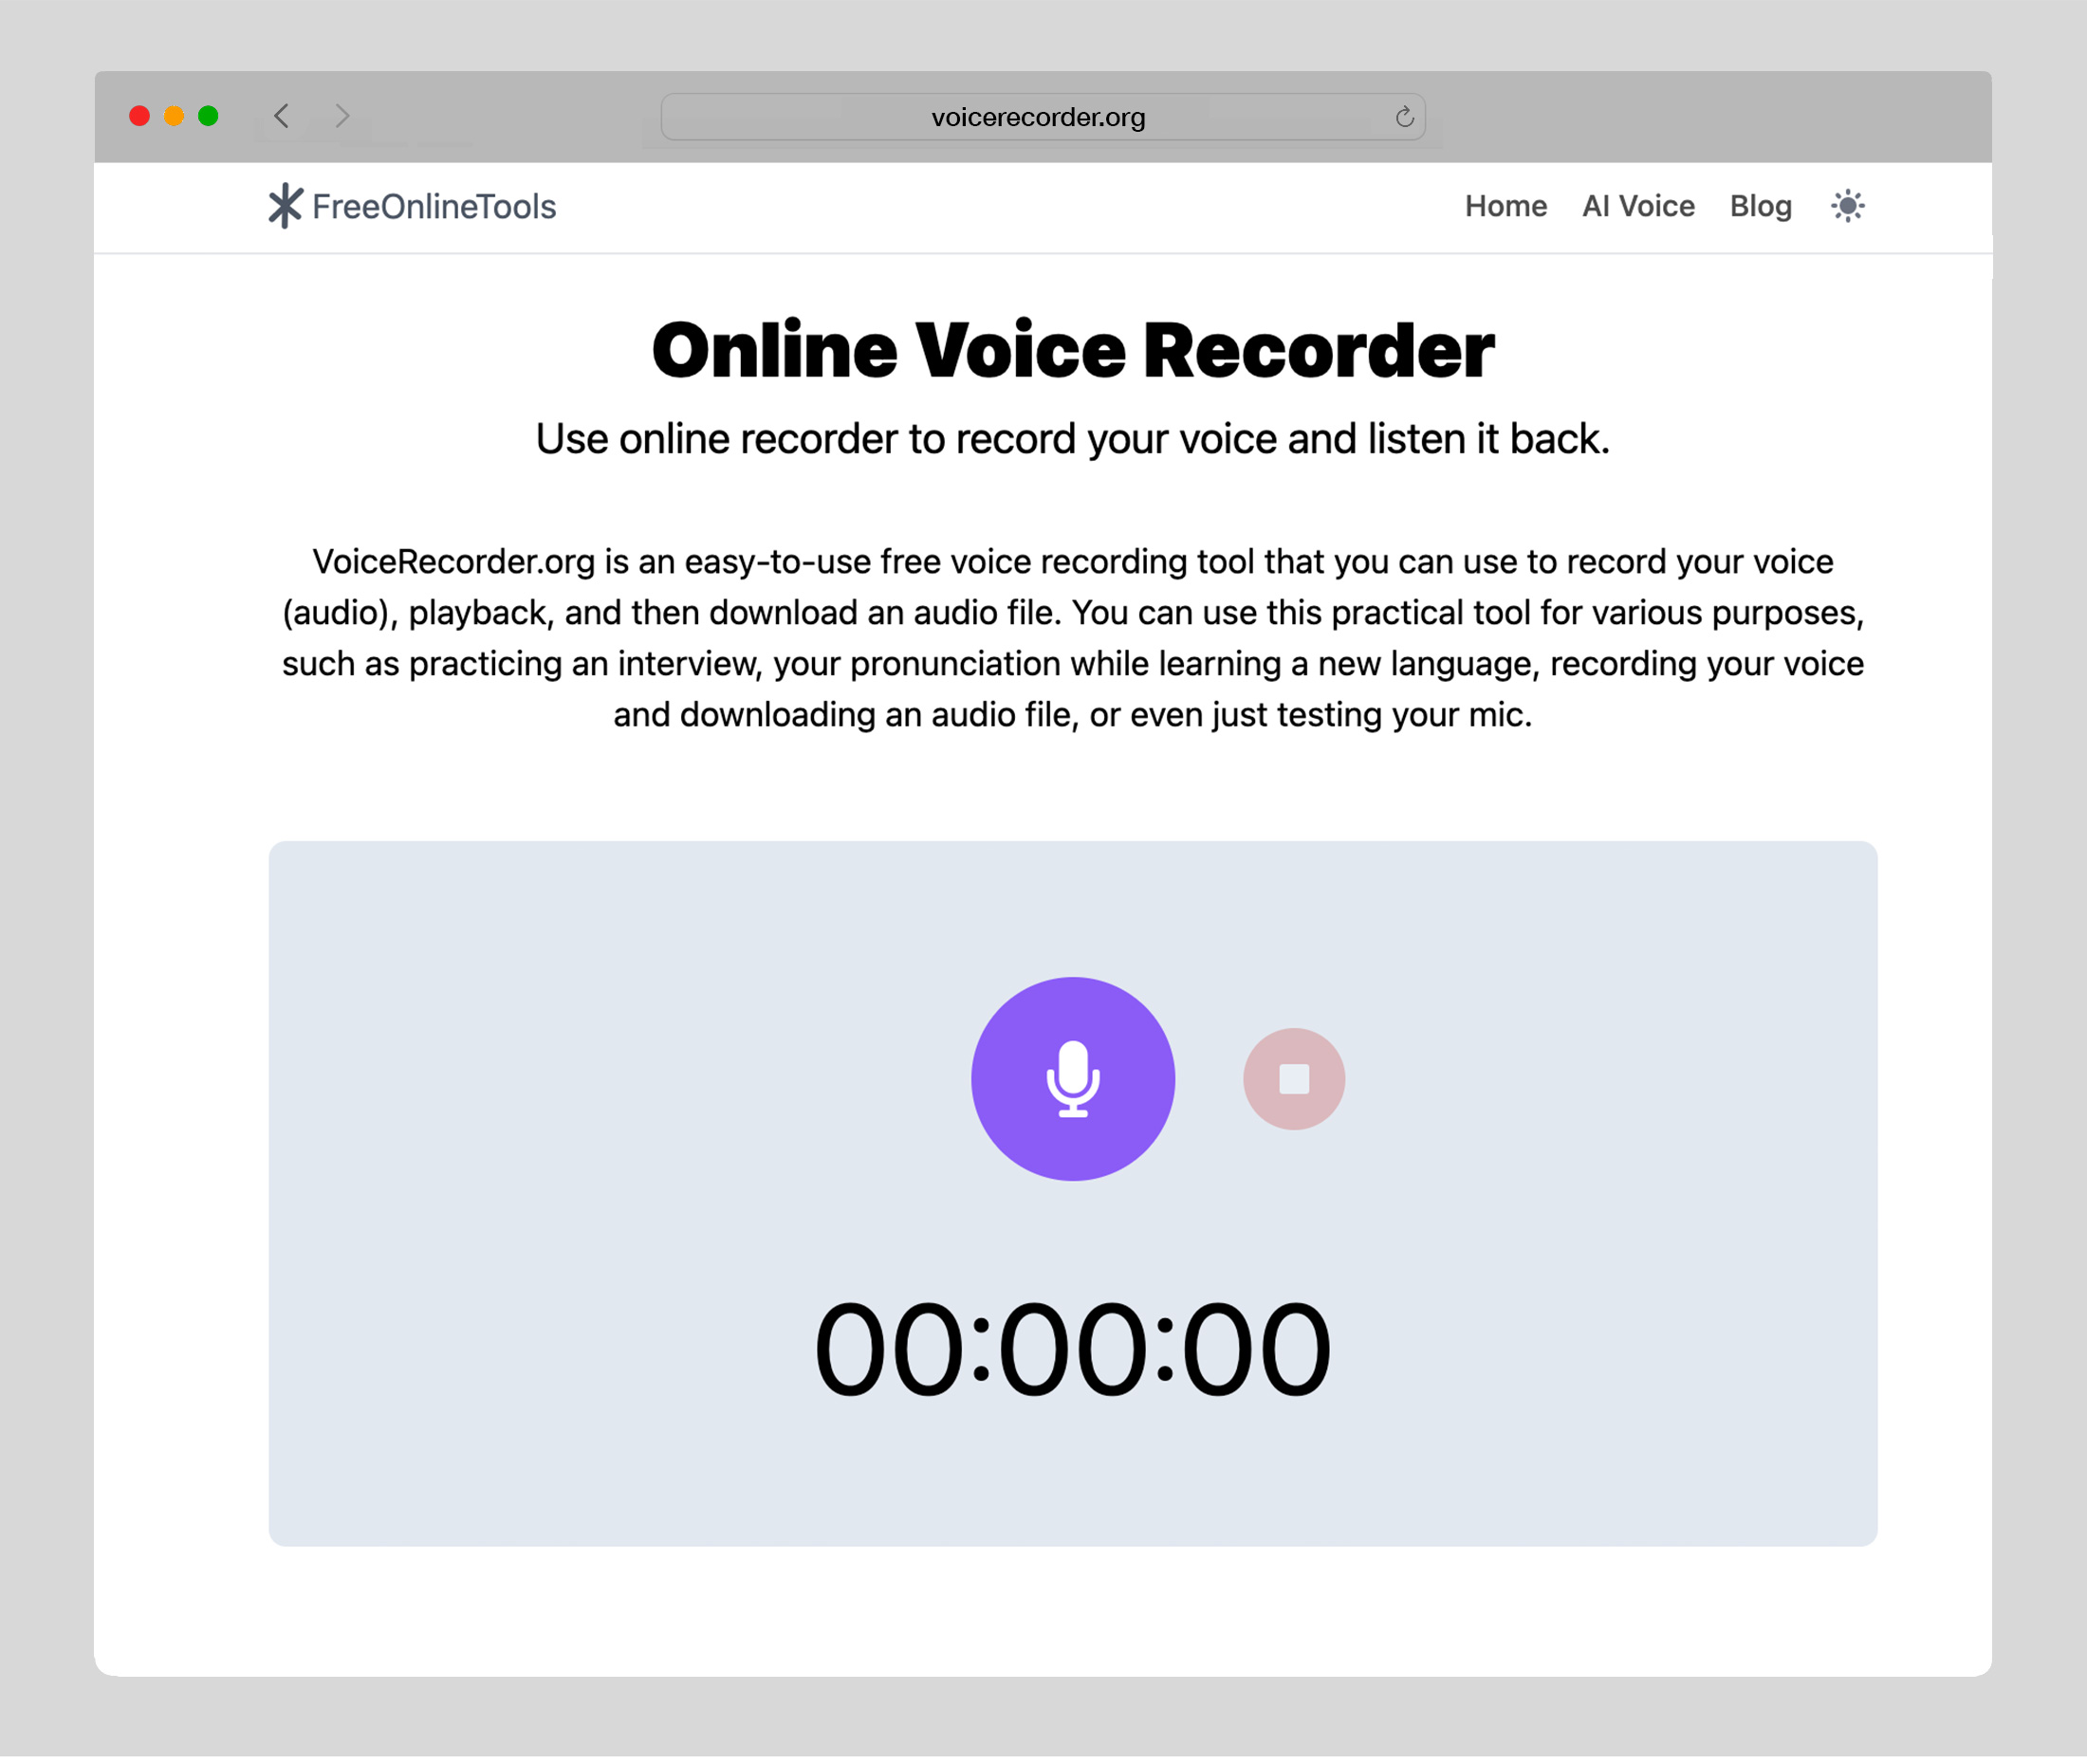 Audio Recorder, Voice Recorder